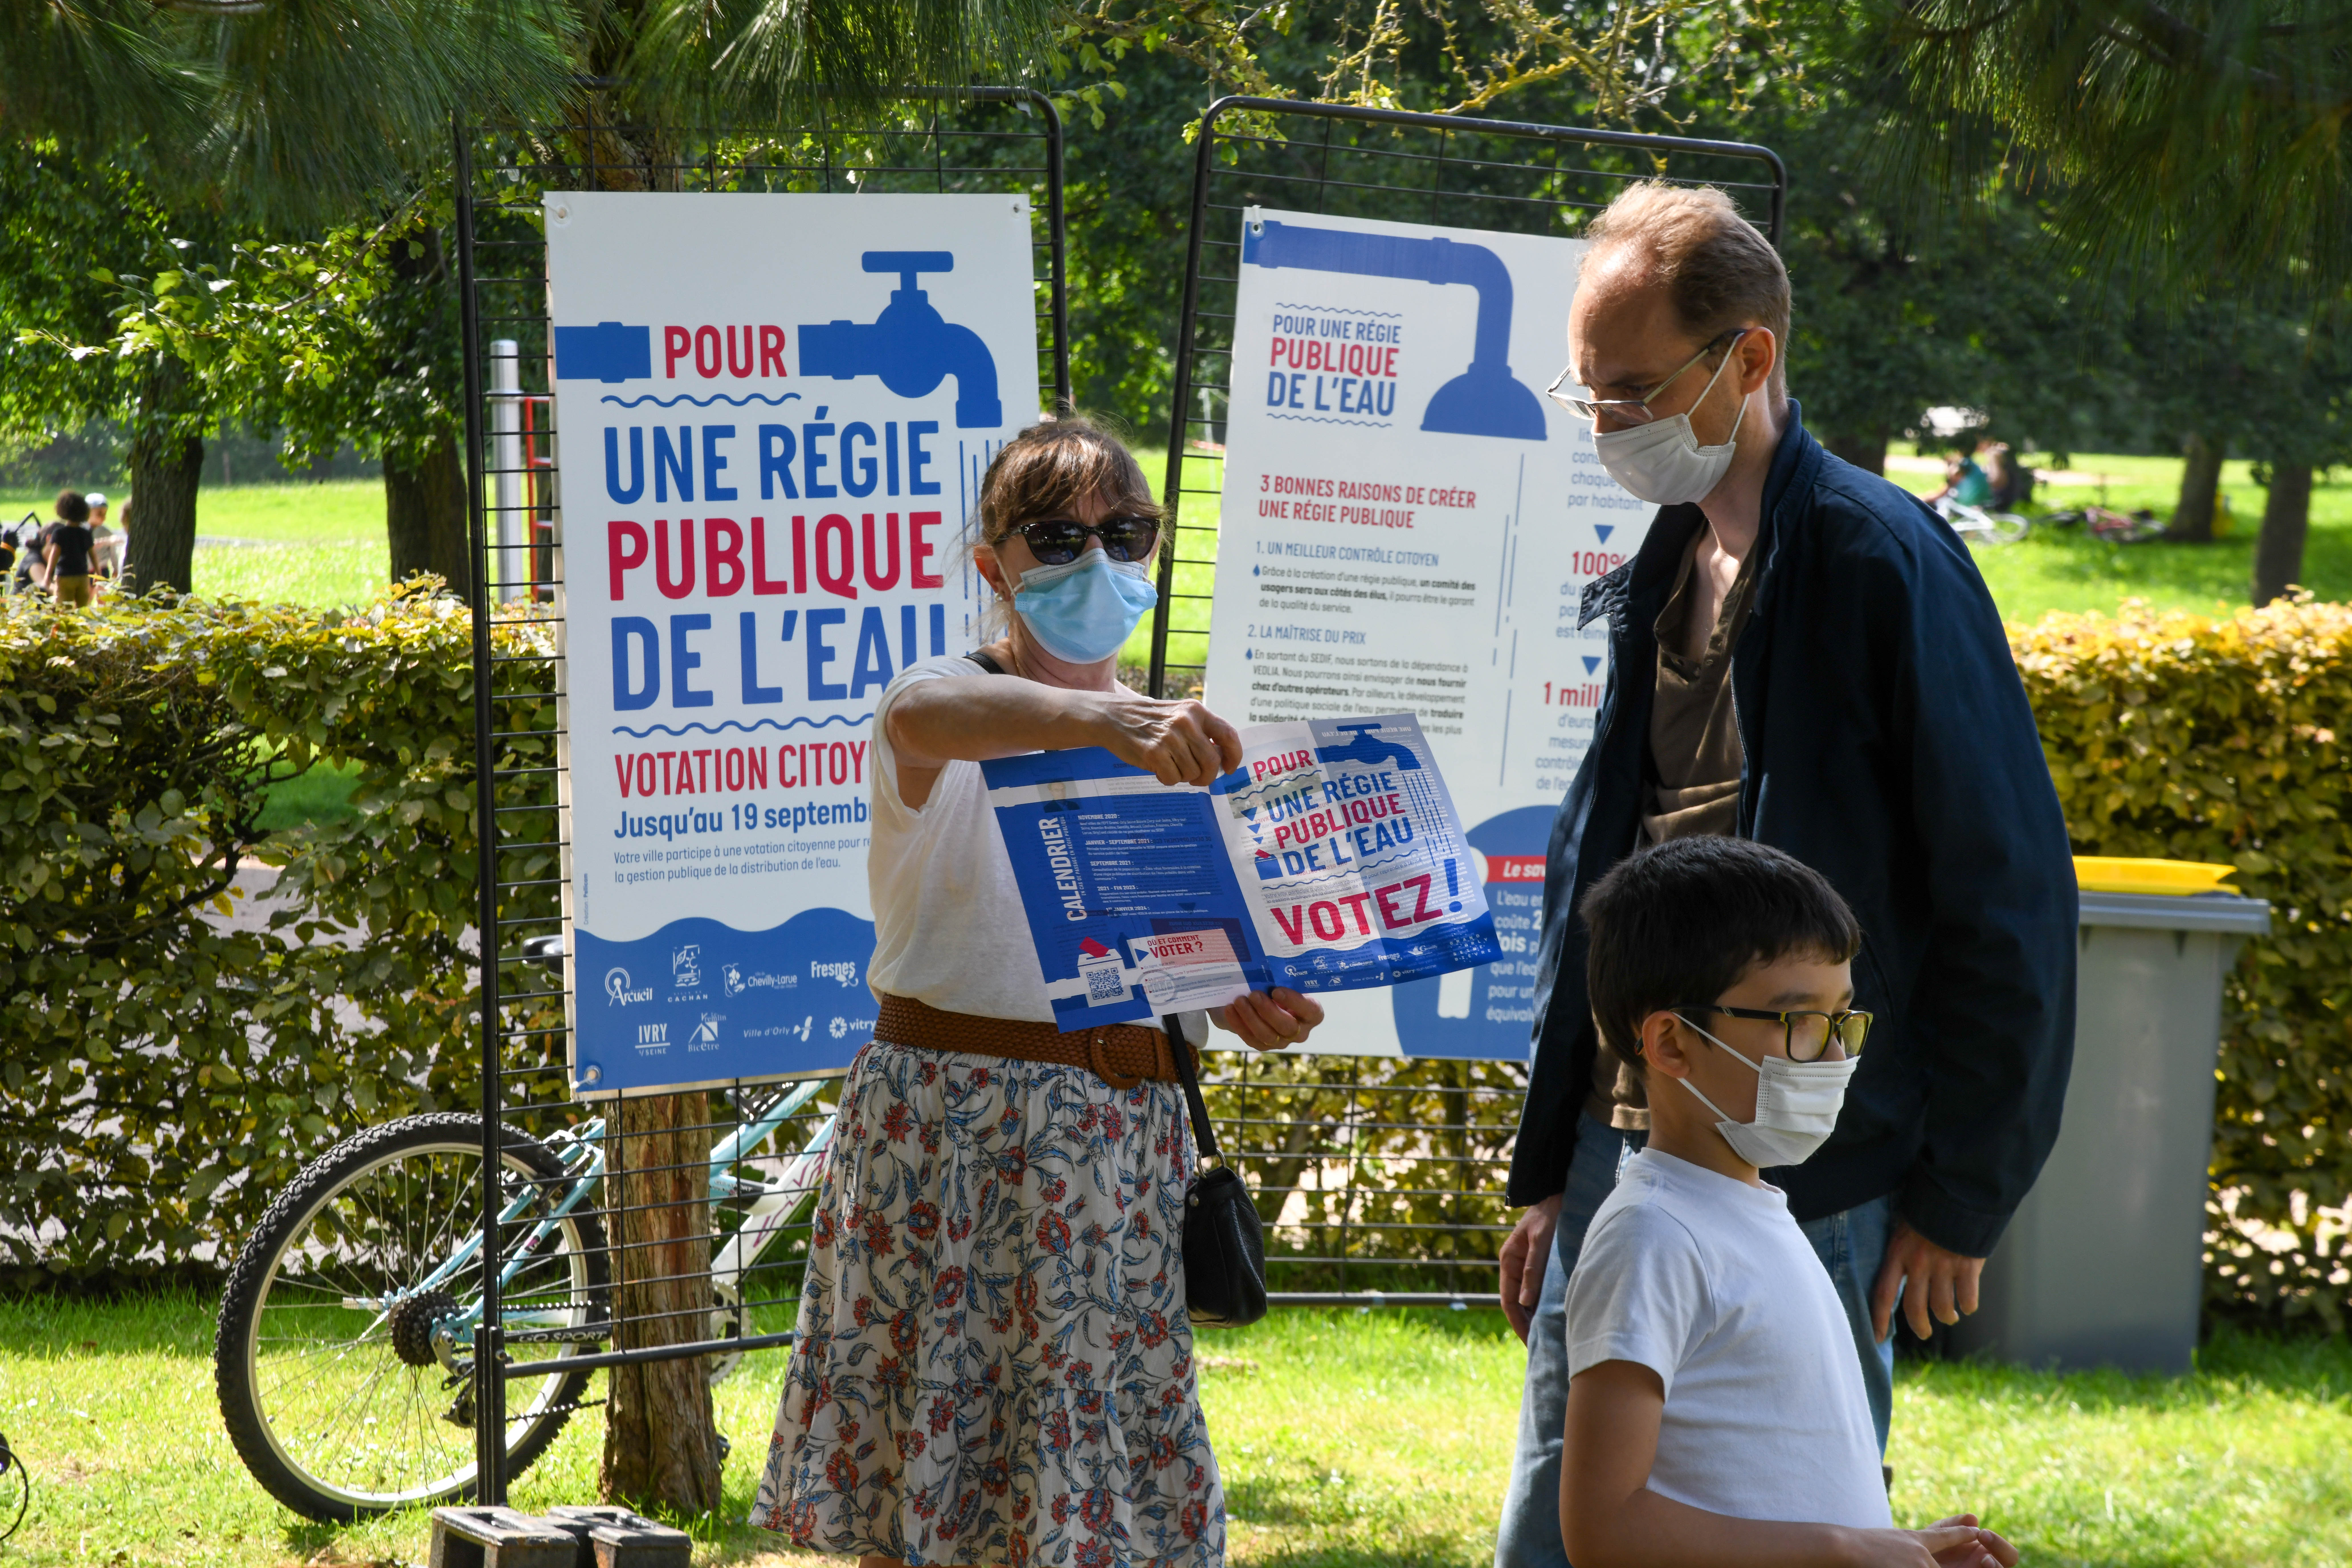 Temps de votation citoyenne au parc départemental Petit le Roy cet été - Agrandir l'image, .JPG 3,49Mo (fenêtre modale)